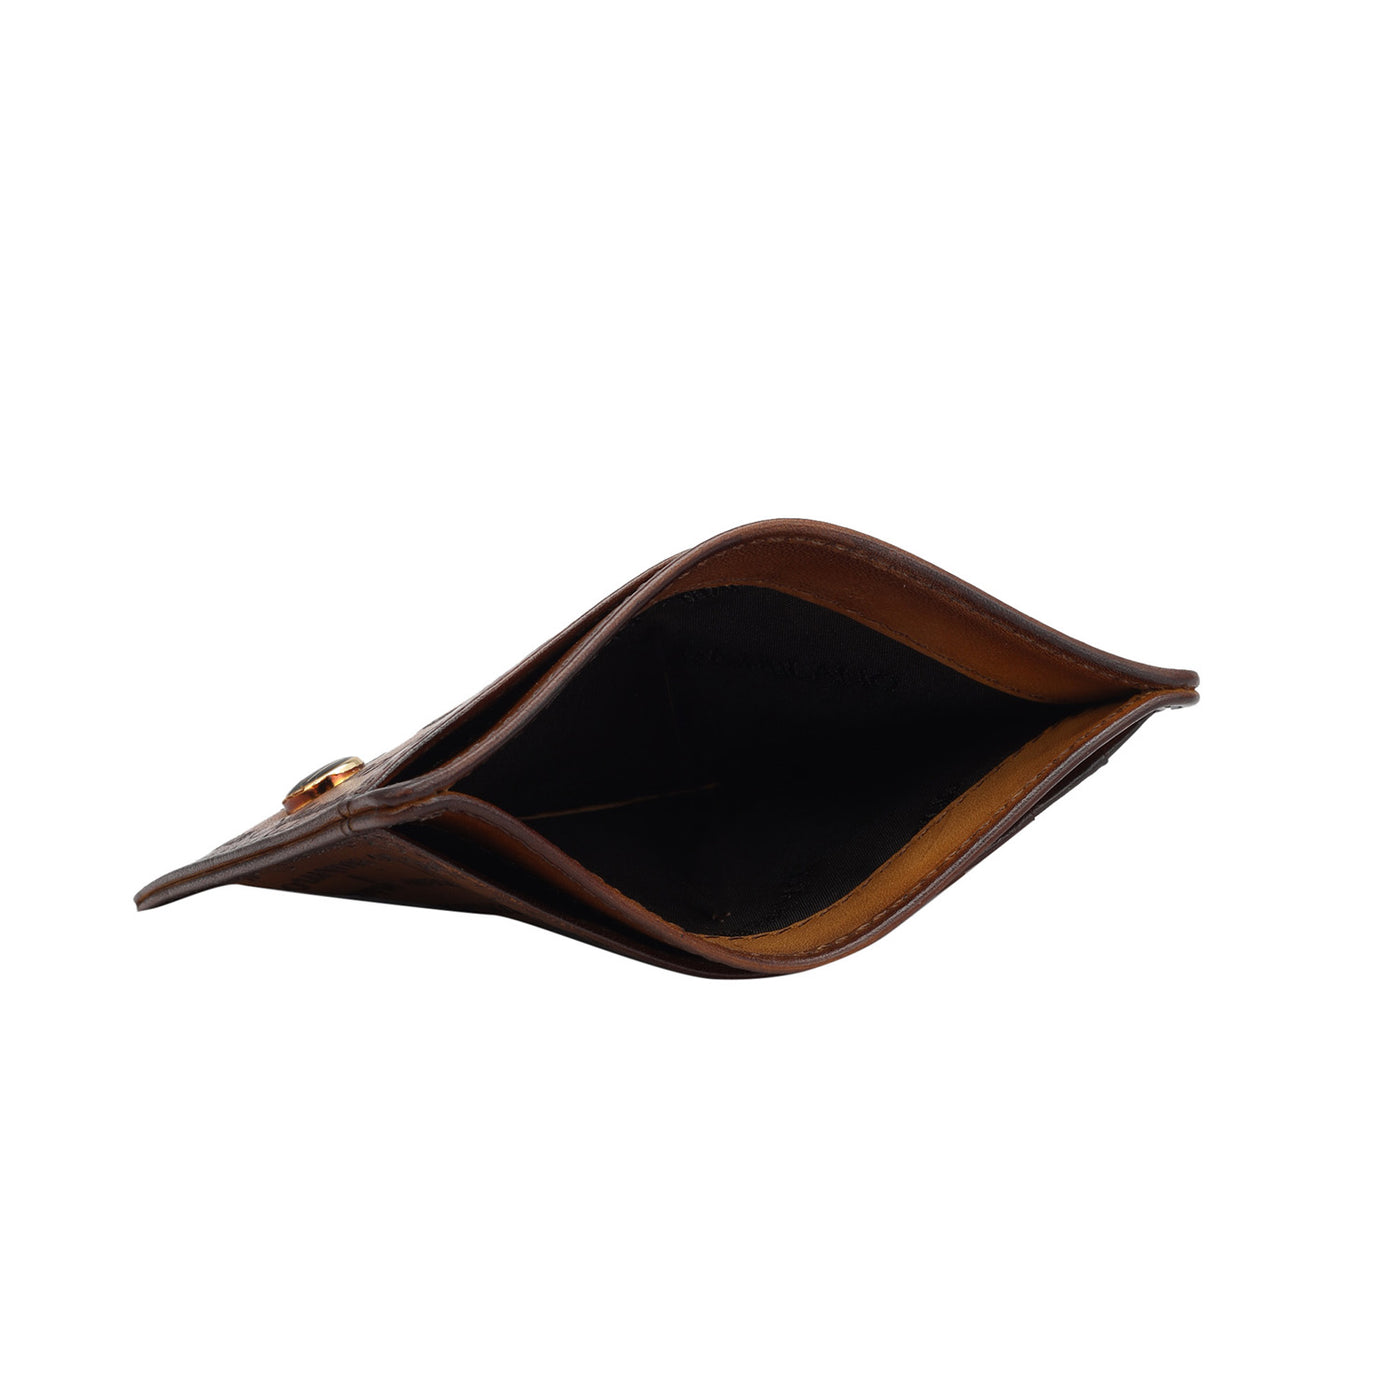 Signato Leather Card Case - Cognac